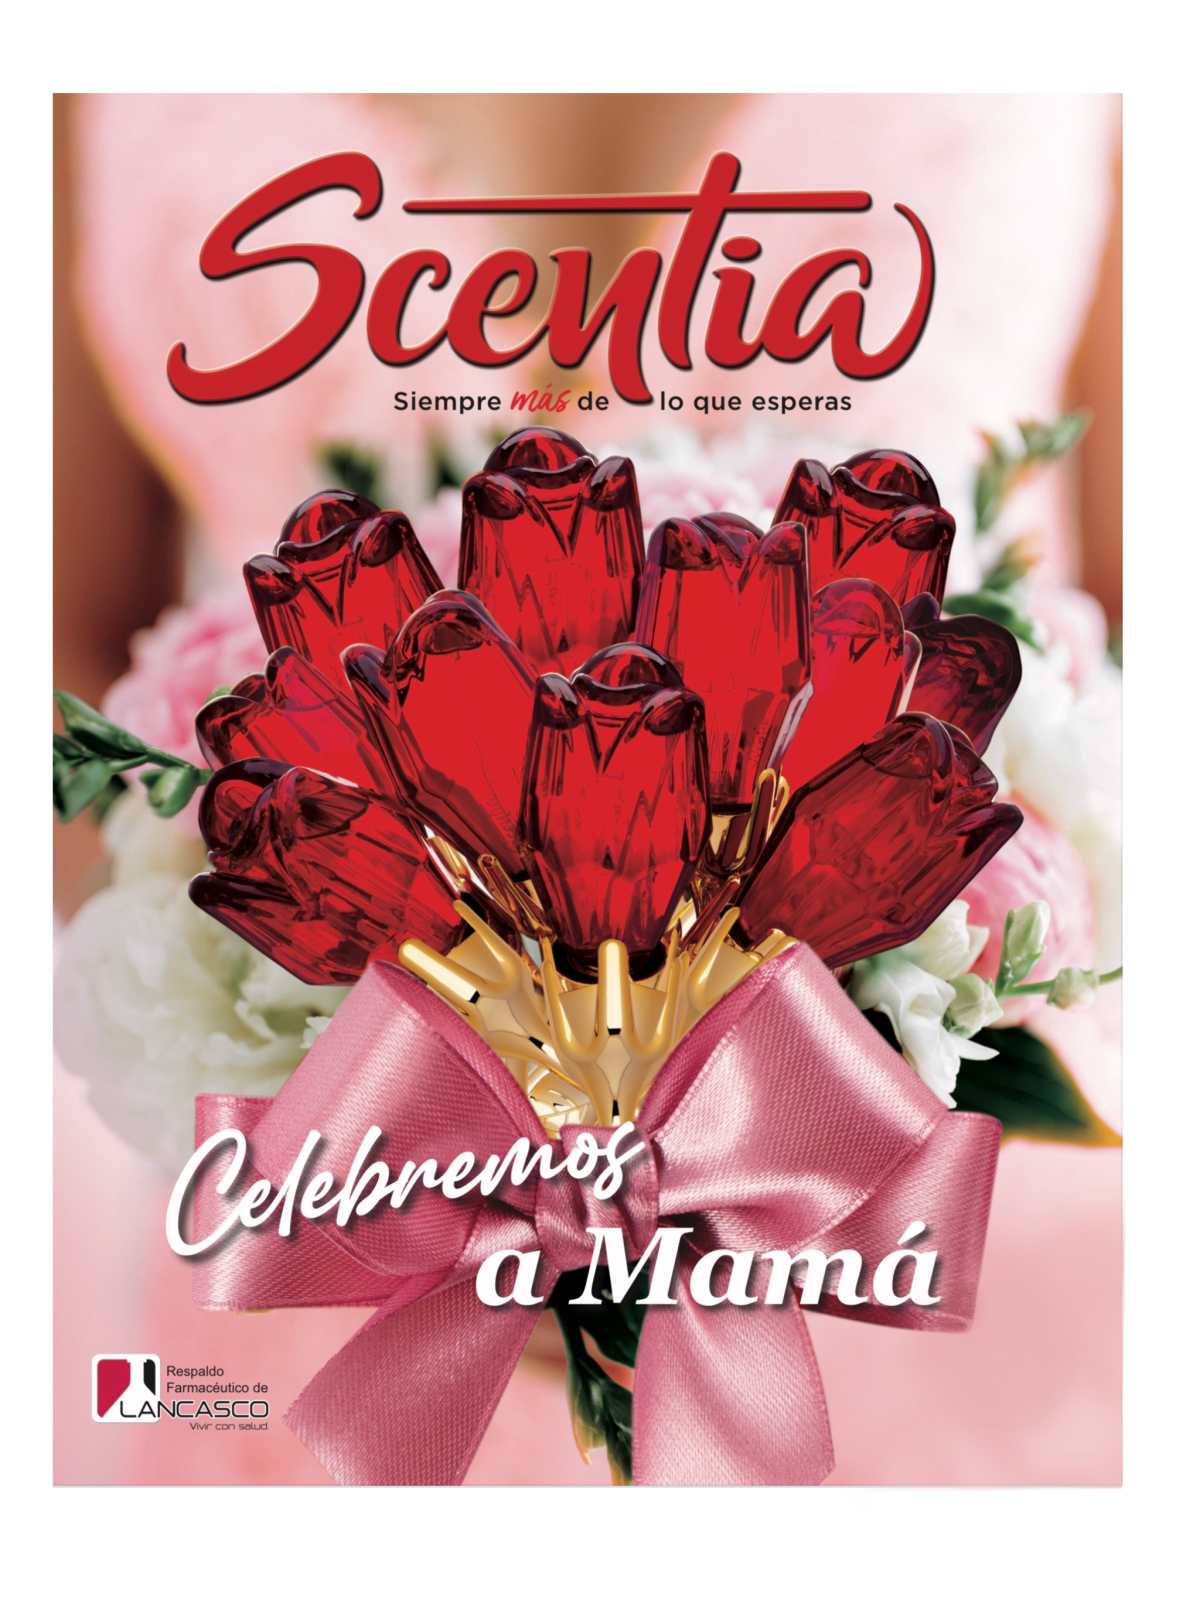 Scentia celebra el mes de las madres con el lanzamiento un nuevo perfume